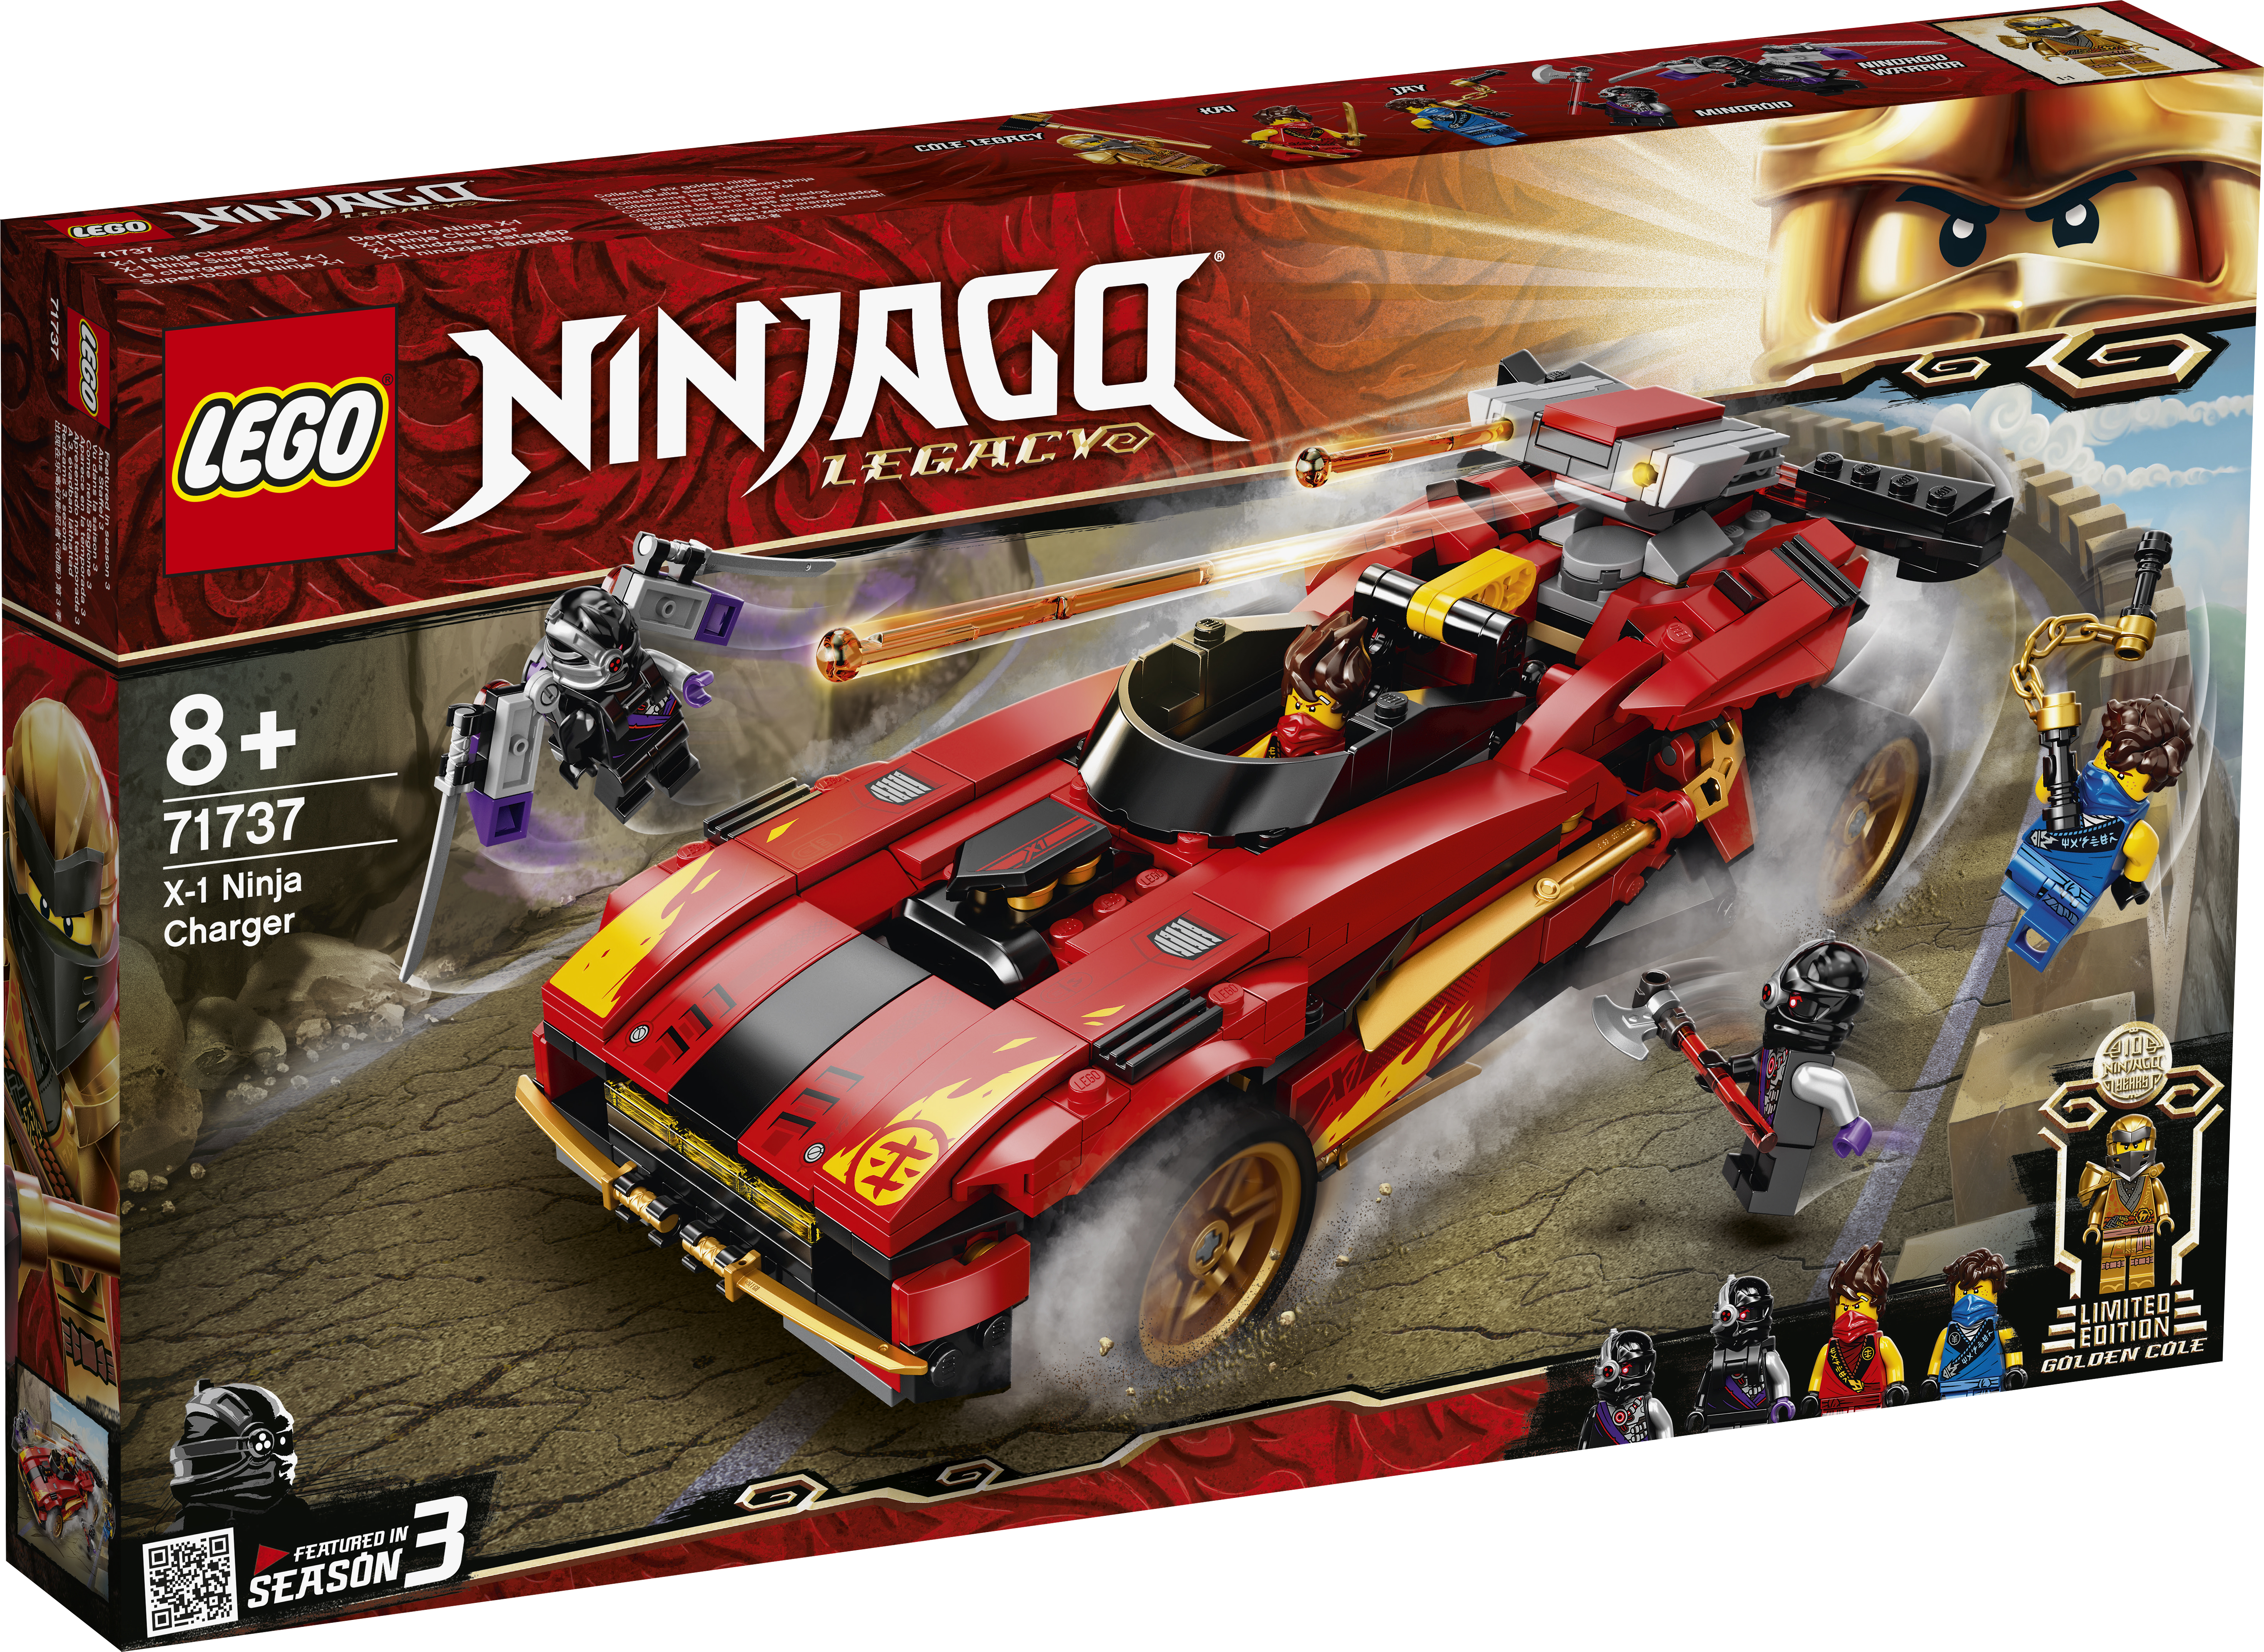  Ninjago X-1 Ninjabil - 71737